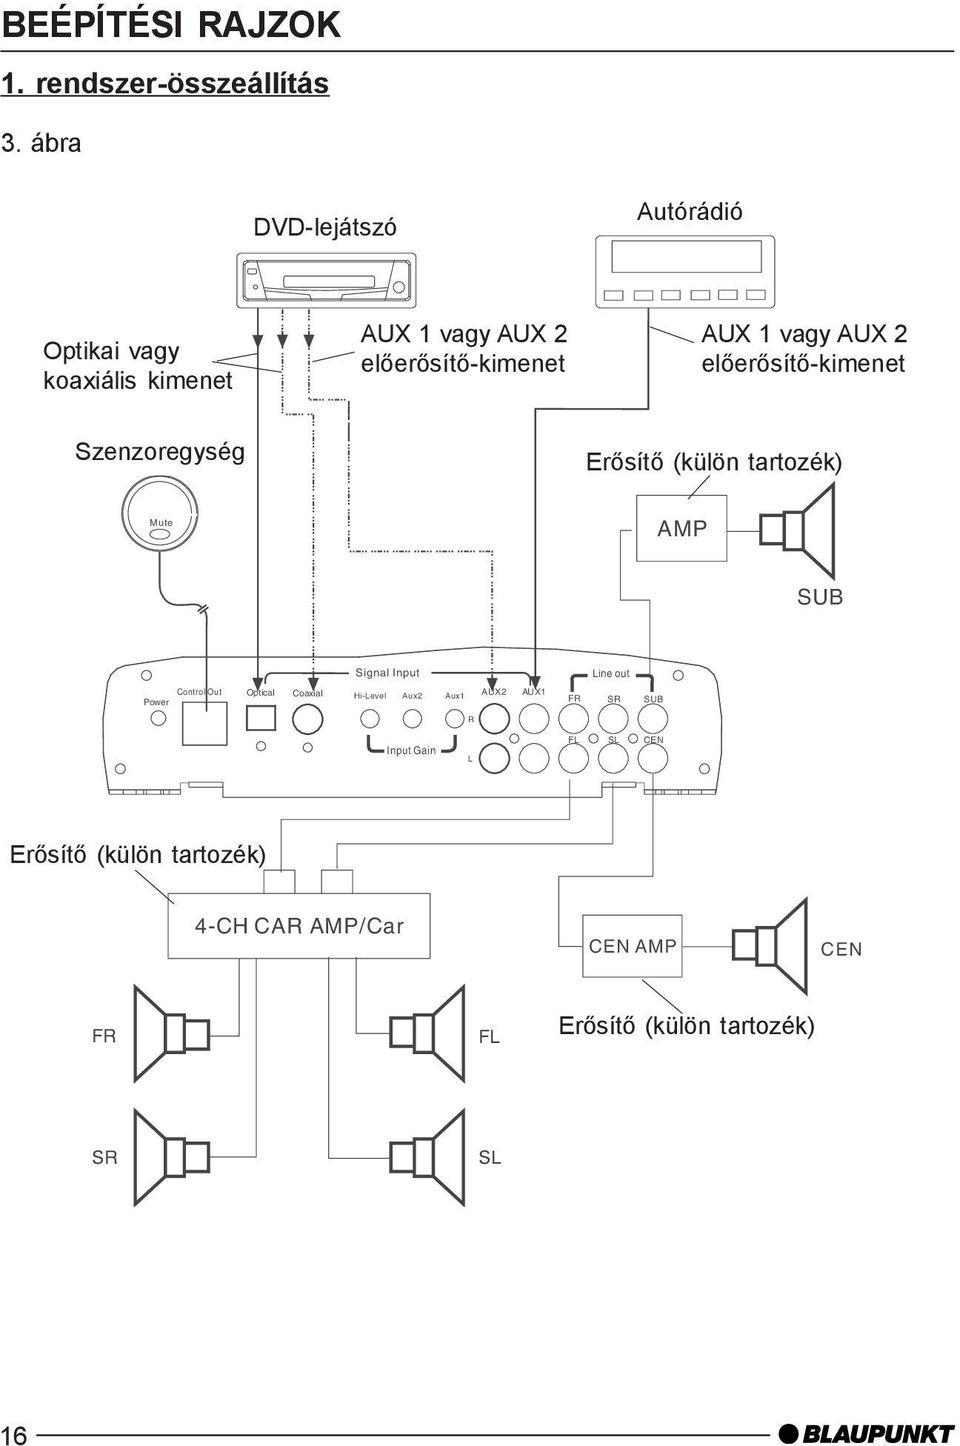 2 elõerõsítõ-kimenet Szenzoregység Erõsítõ (külön tartozék) Mute AMP SUB Signal Input Line out Power Control